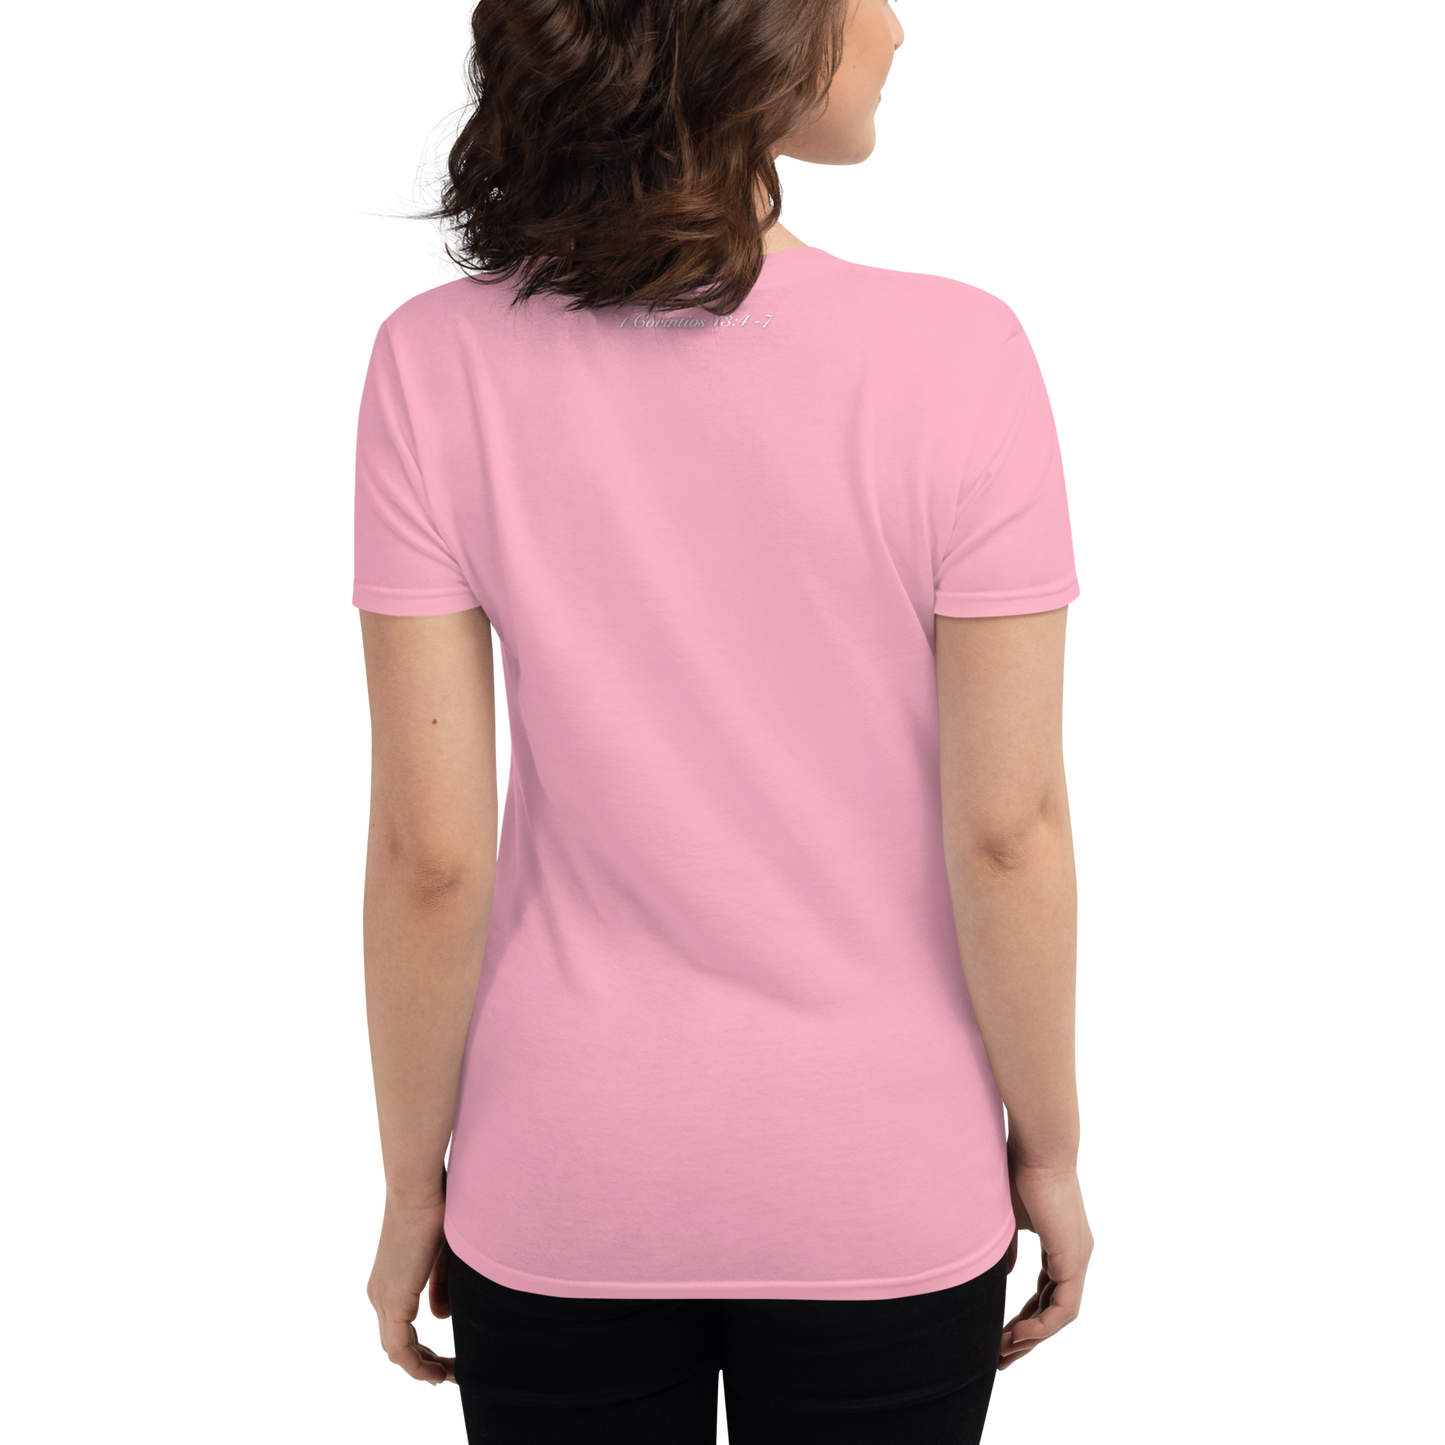 Women's Short Sleeve T-shirt